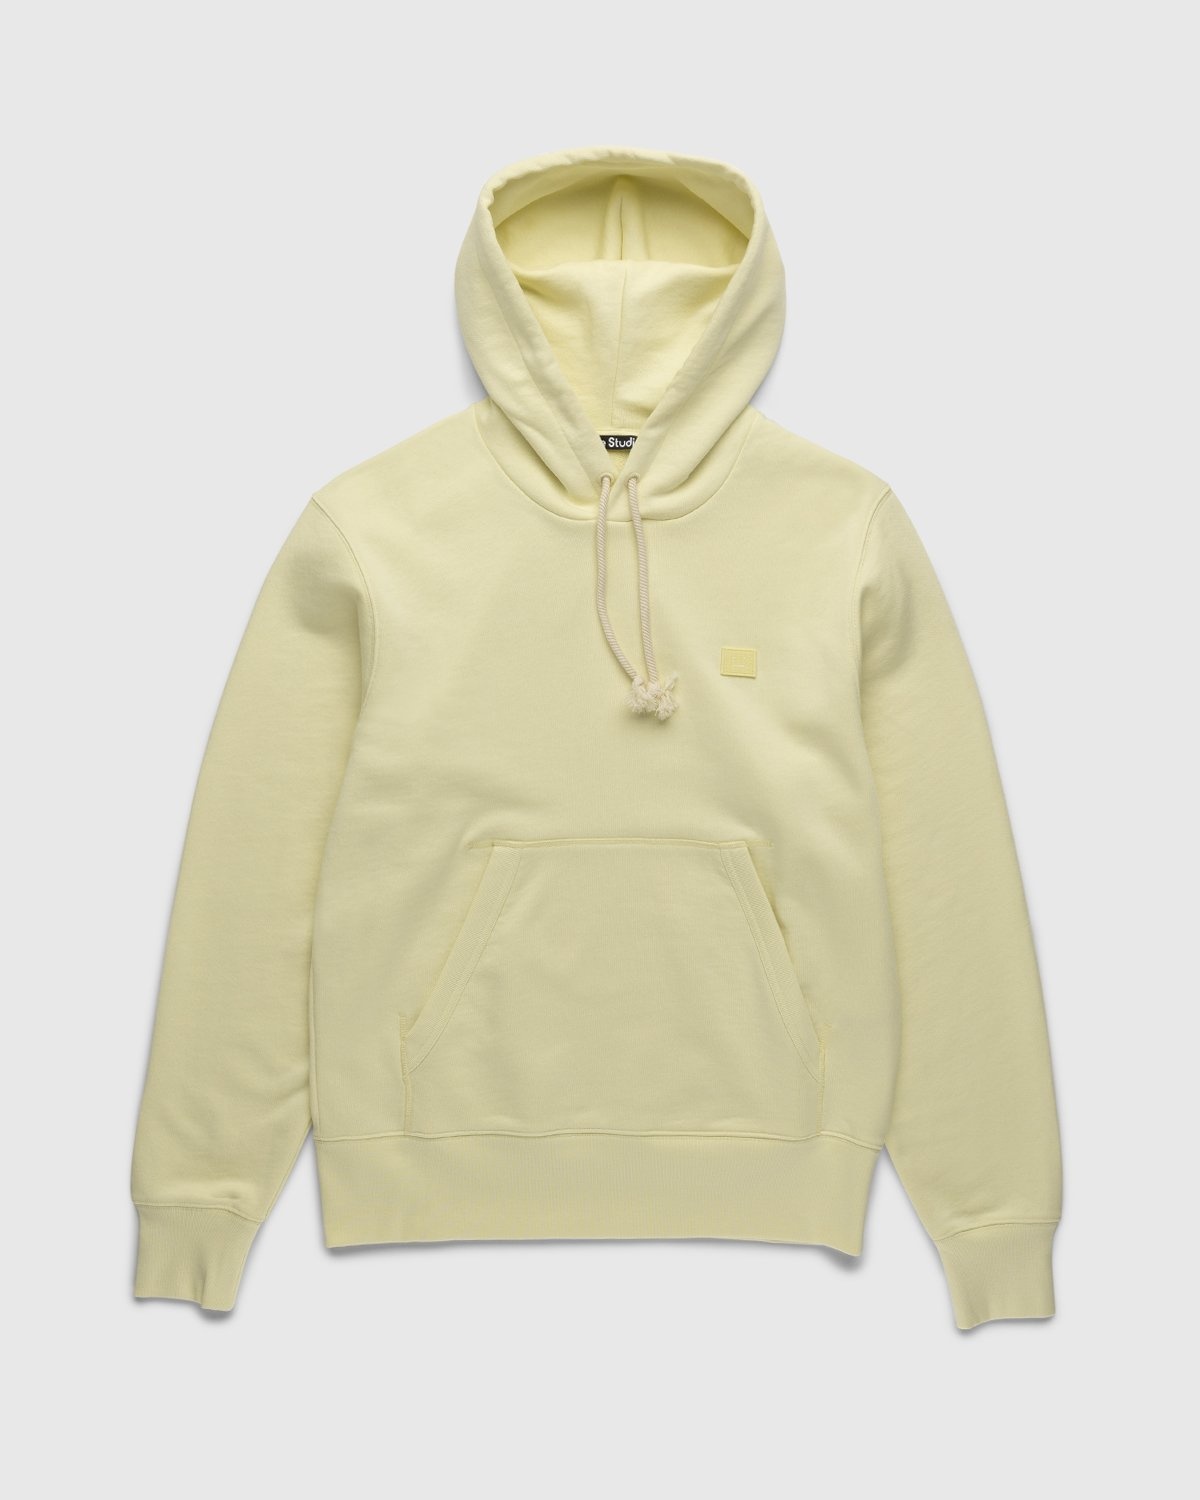 Acne Studios – Organic Cotton Hooded Sweatshirt Vanilla Yellow - Hoodies - Yellow - Image 1